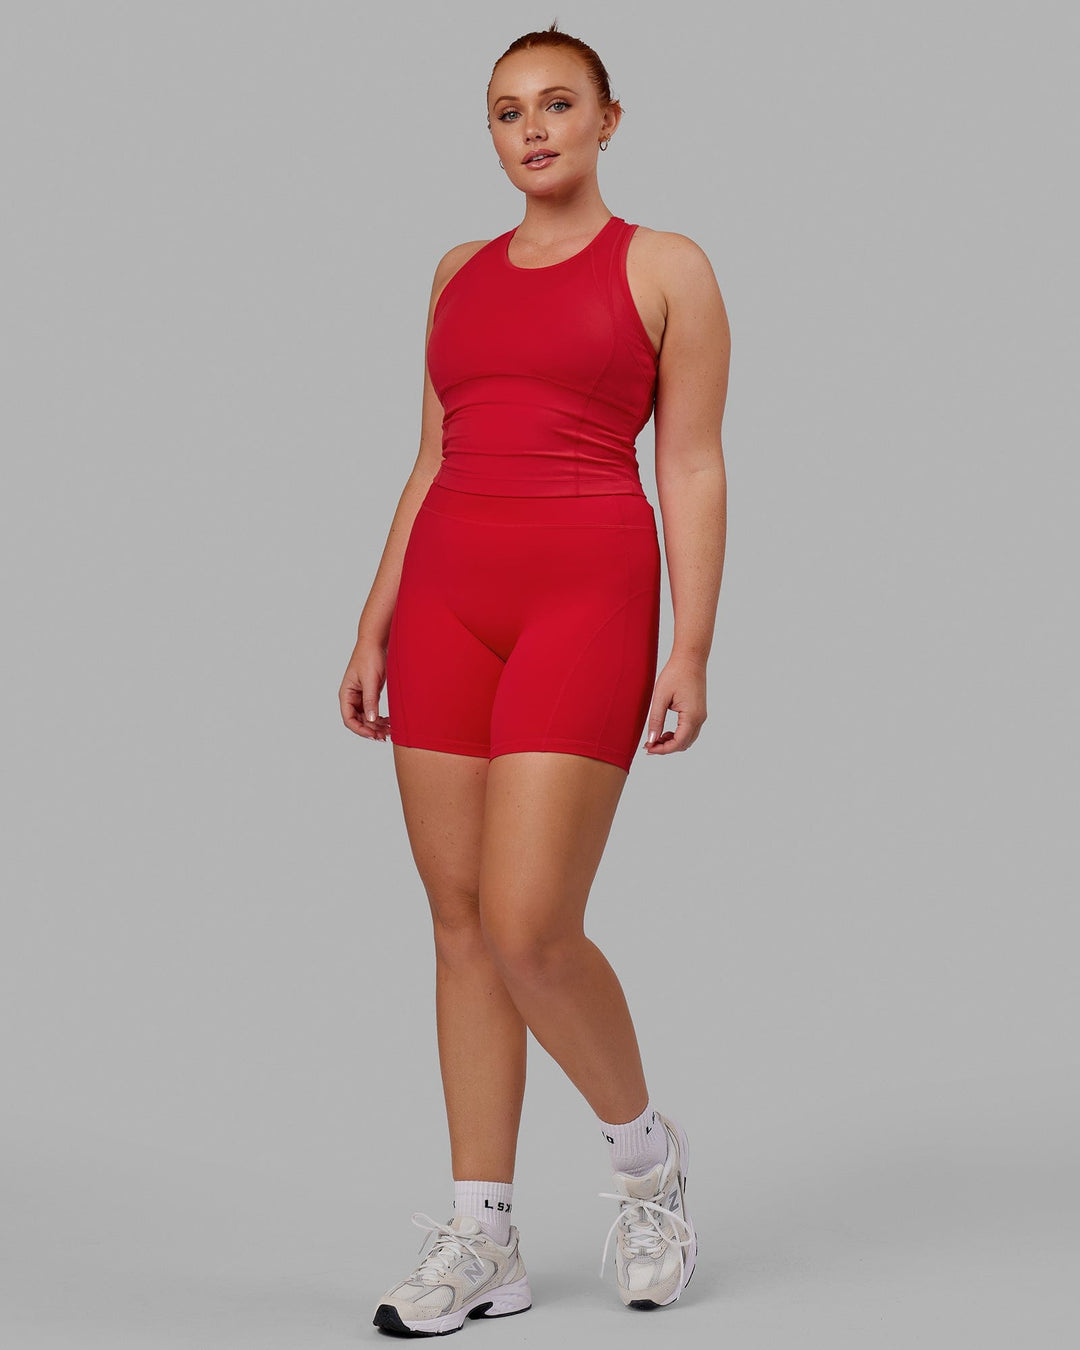 Woman wearing Propel Performance Tank - Scarlet